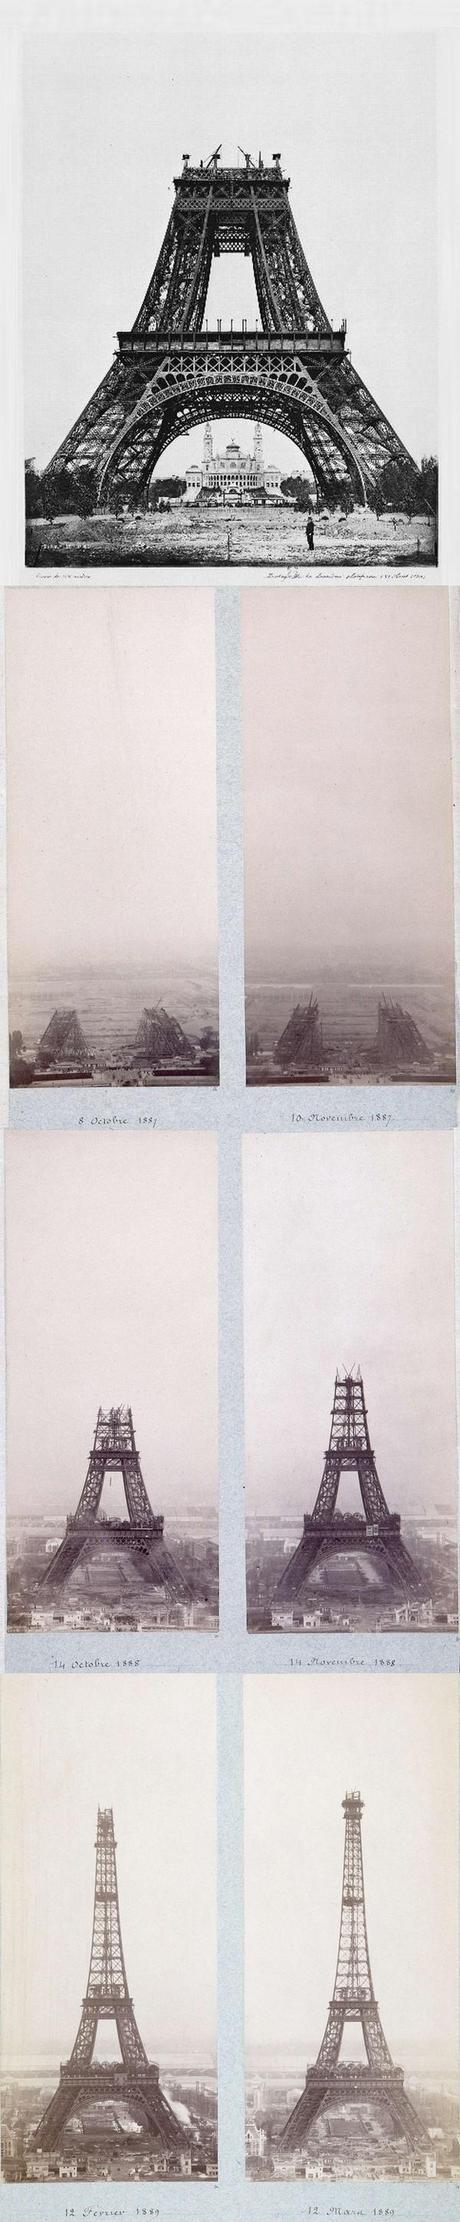 La Tour Eiffel, Paris (1887 - 1889)